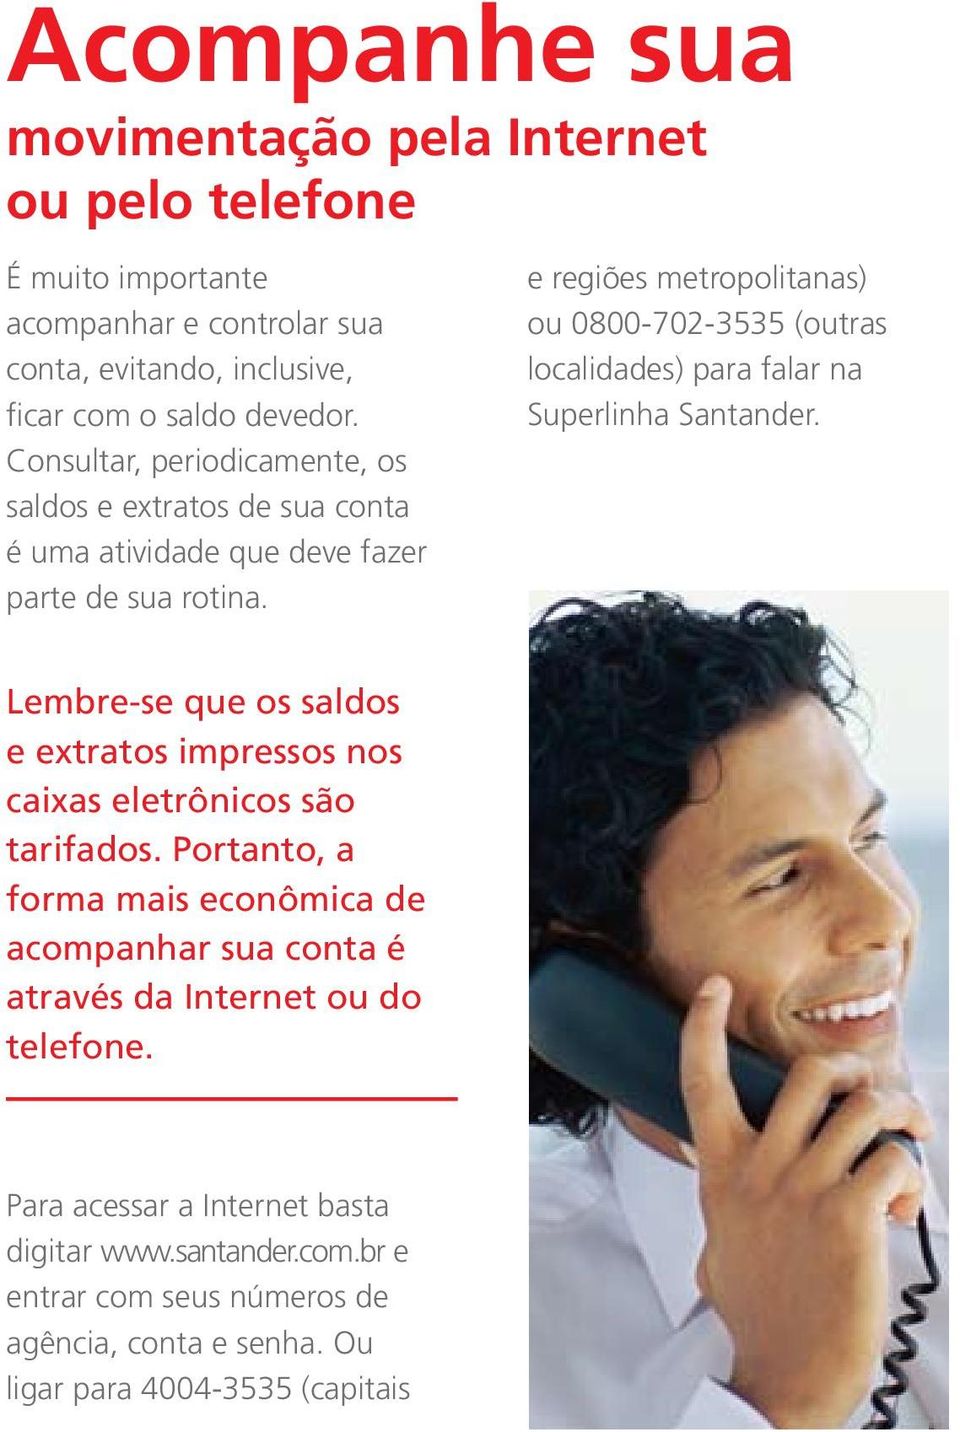 e regiões metropolitanas) ou 0800-702-3535 (outras localidades) para falar na Superlinha Santander.